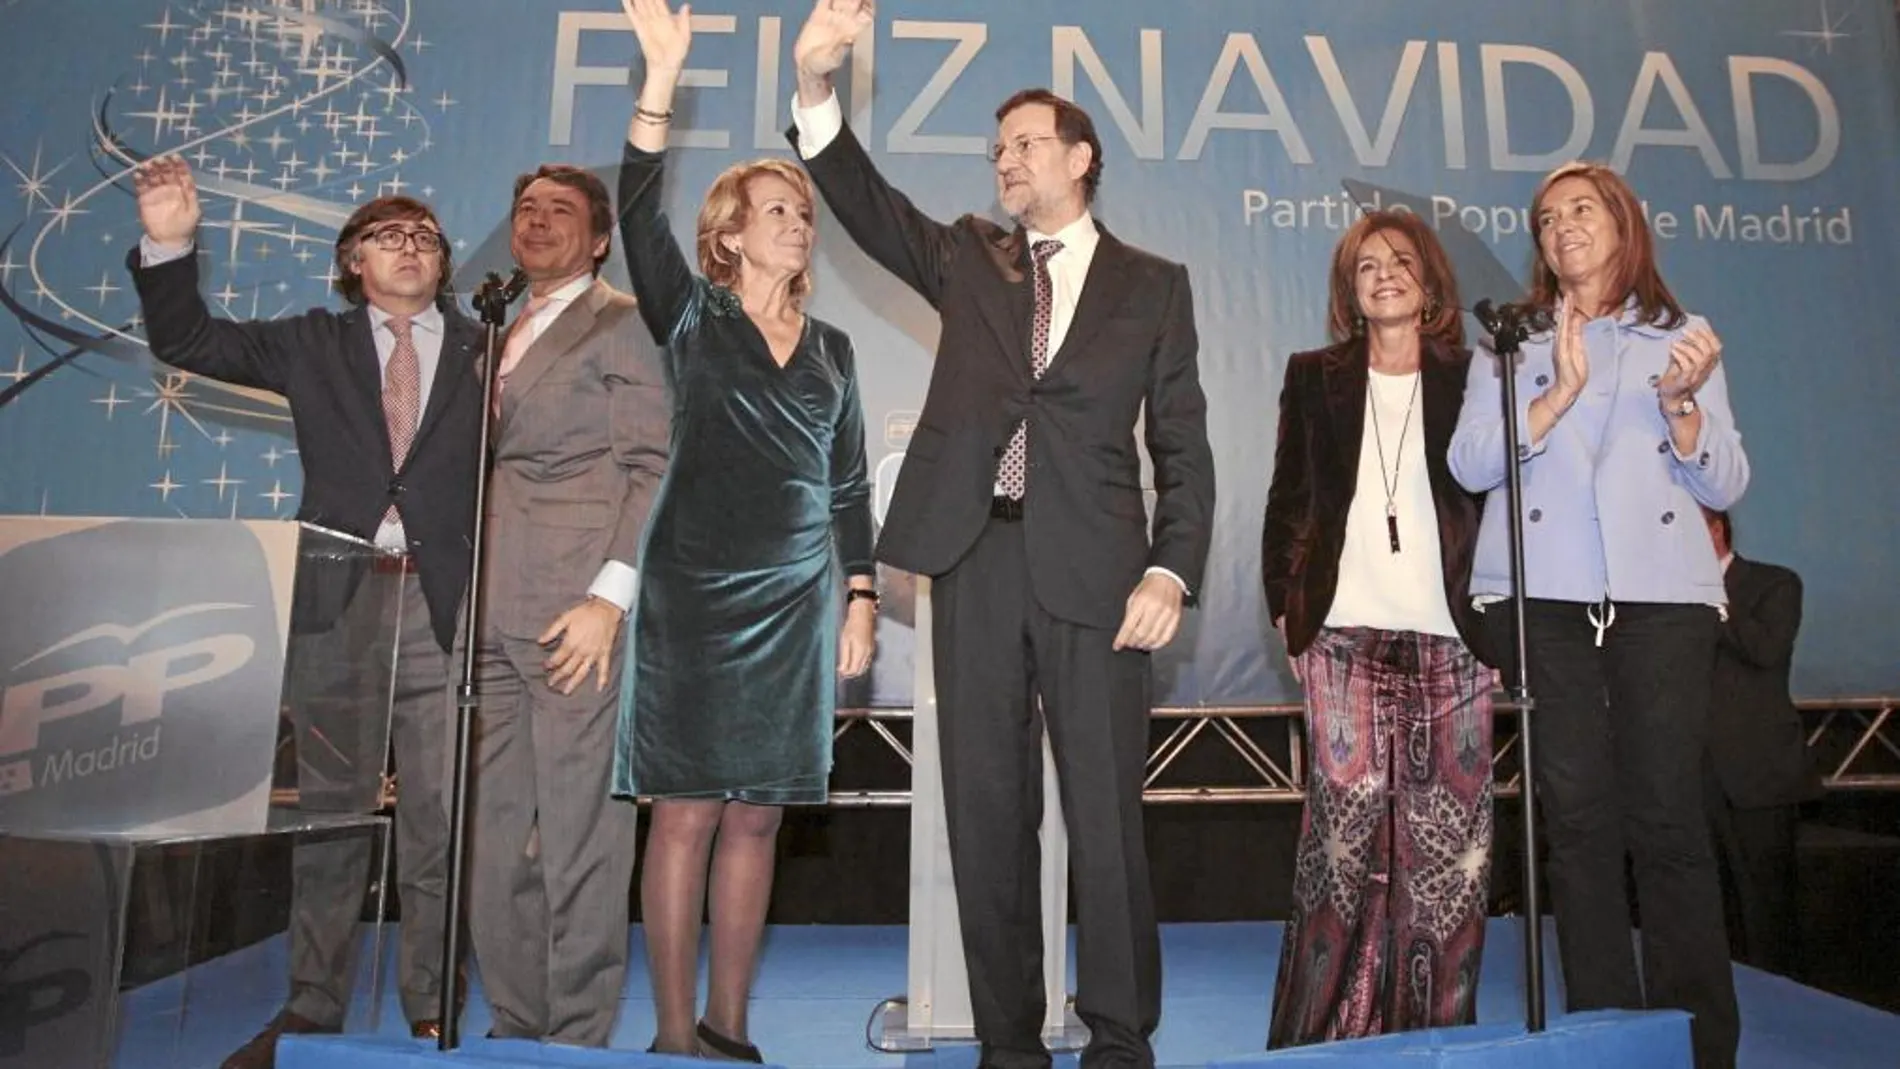 Todo el PP de Madrid cenó ayer con Rajoy, Aguirre, González y Botella